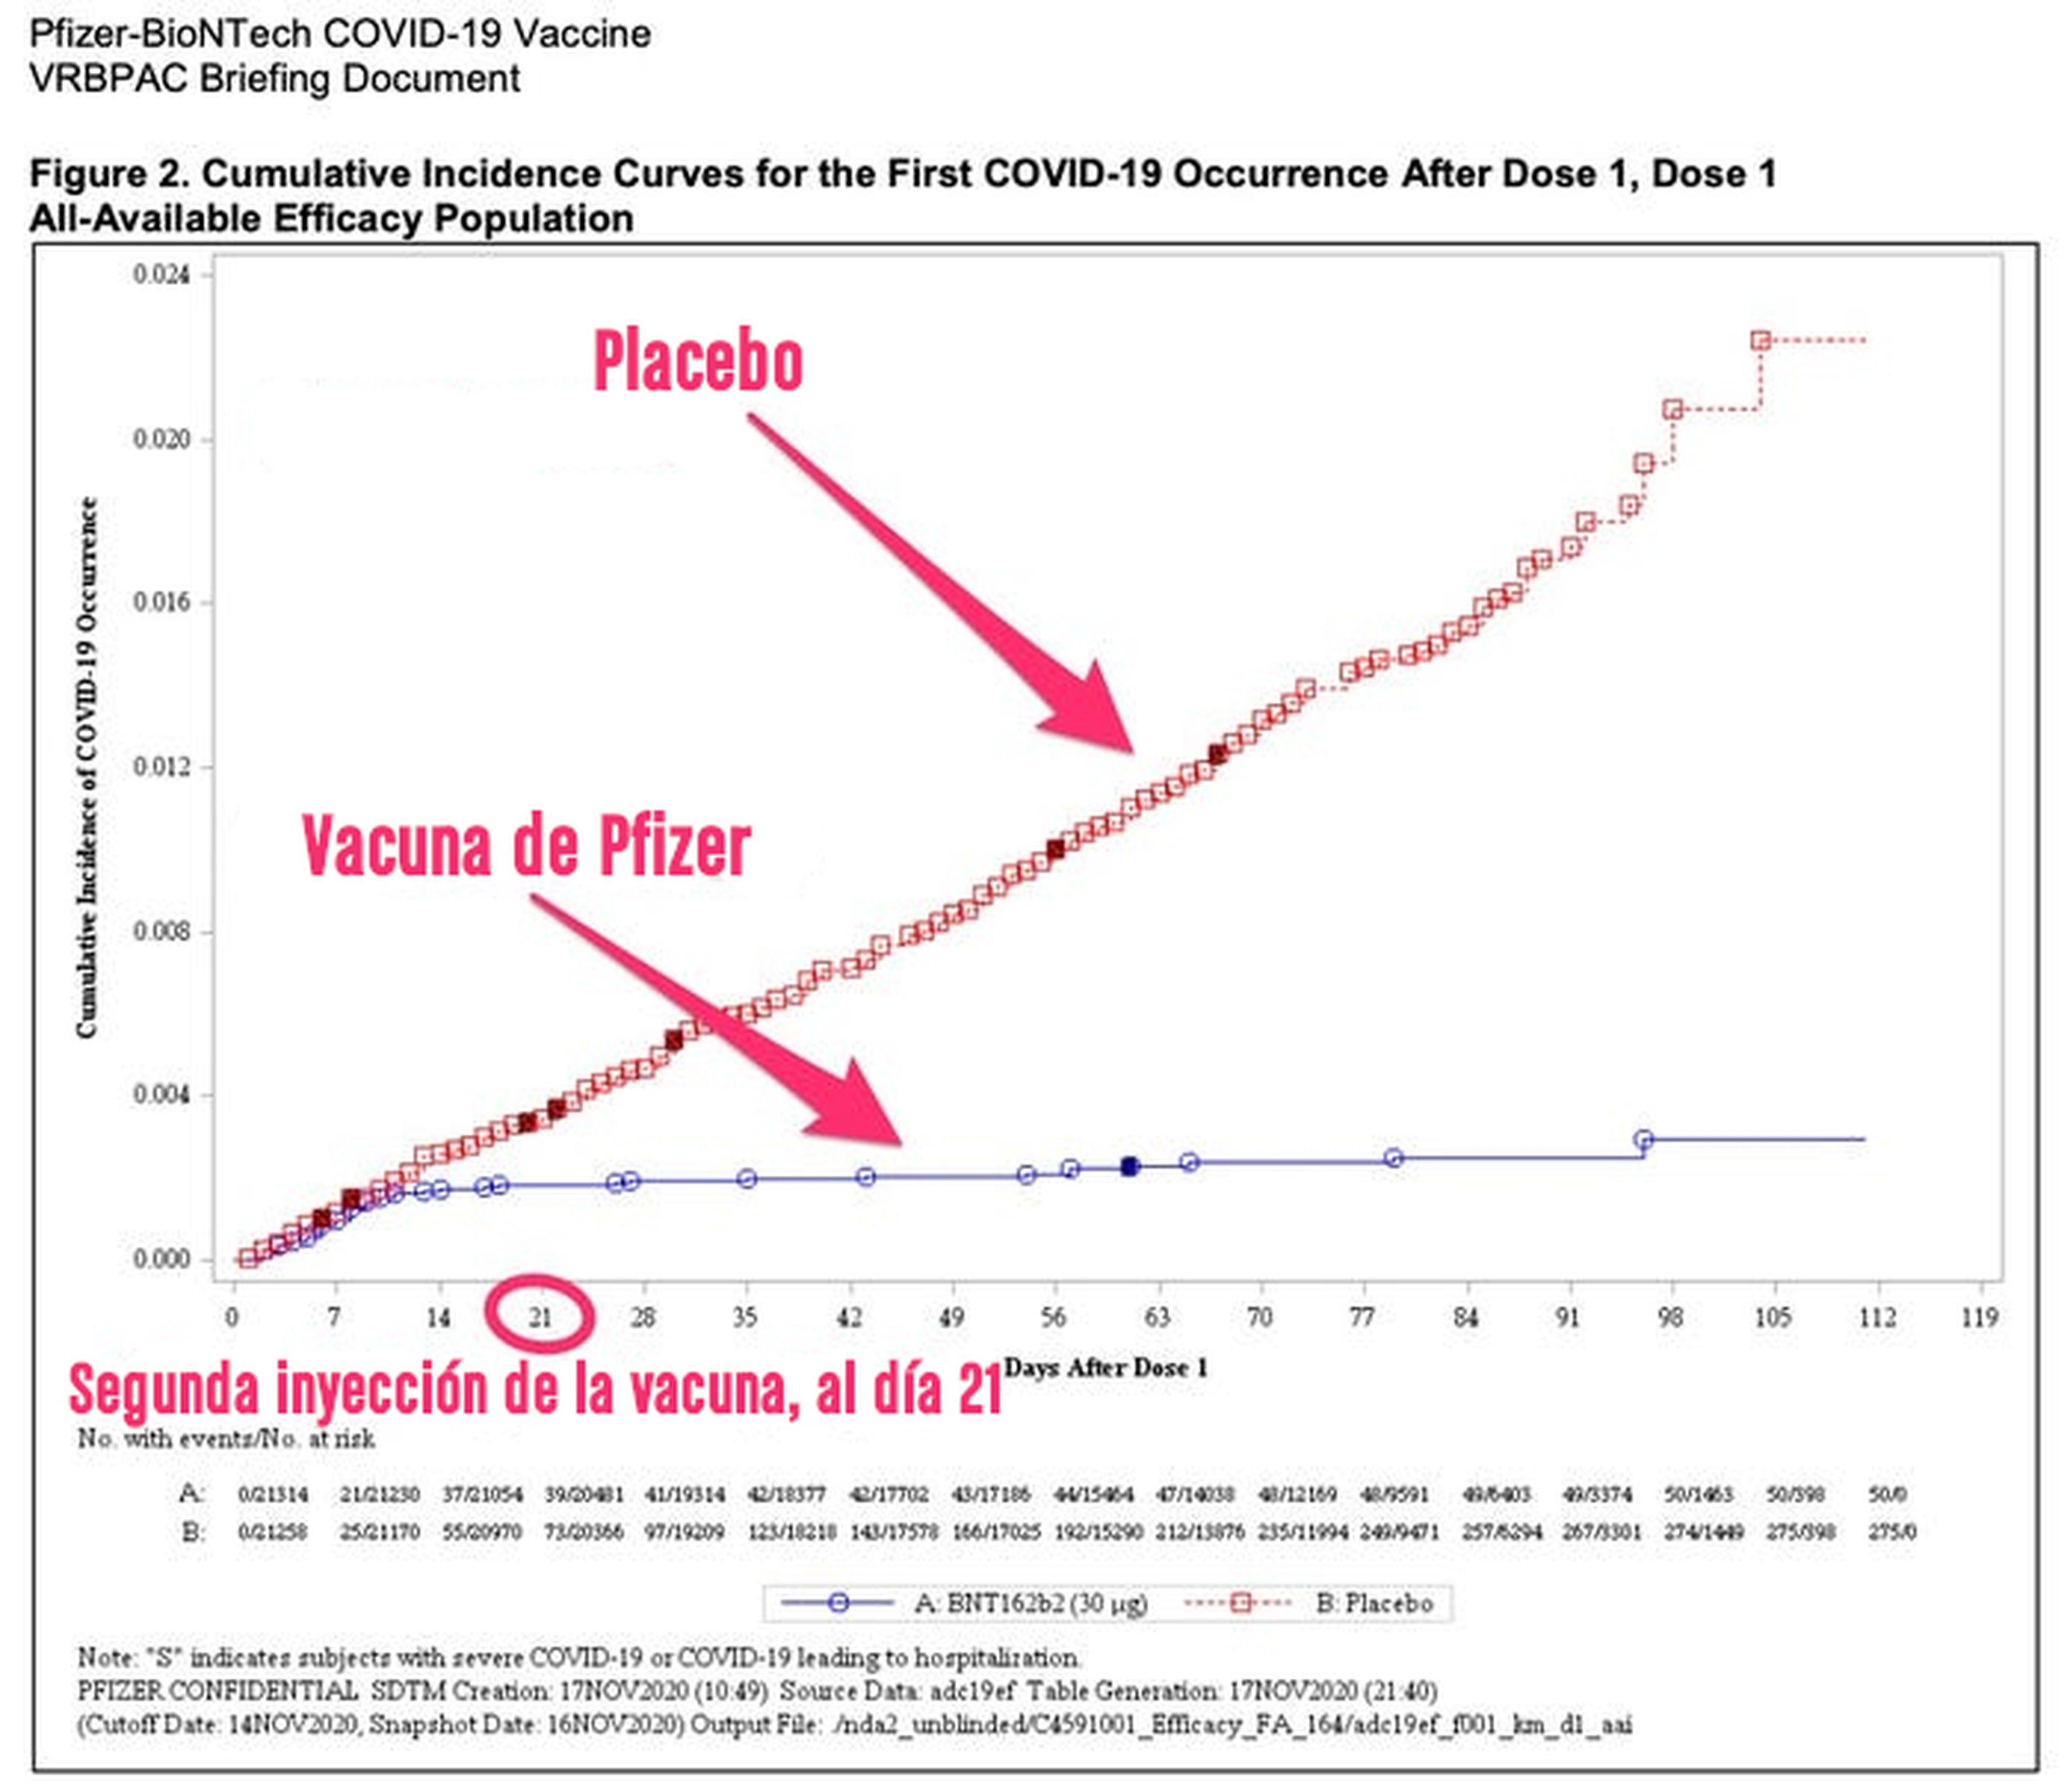 Eficiencia de la vacuna de Pfizer frente al placebo.